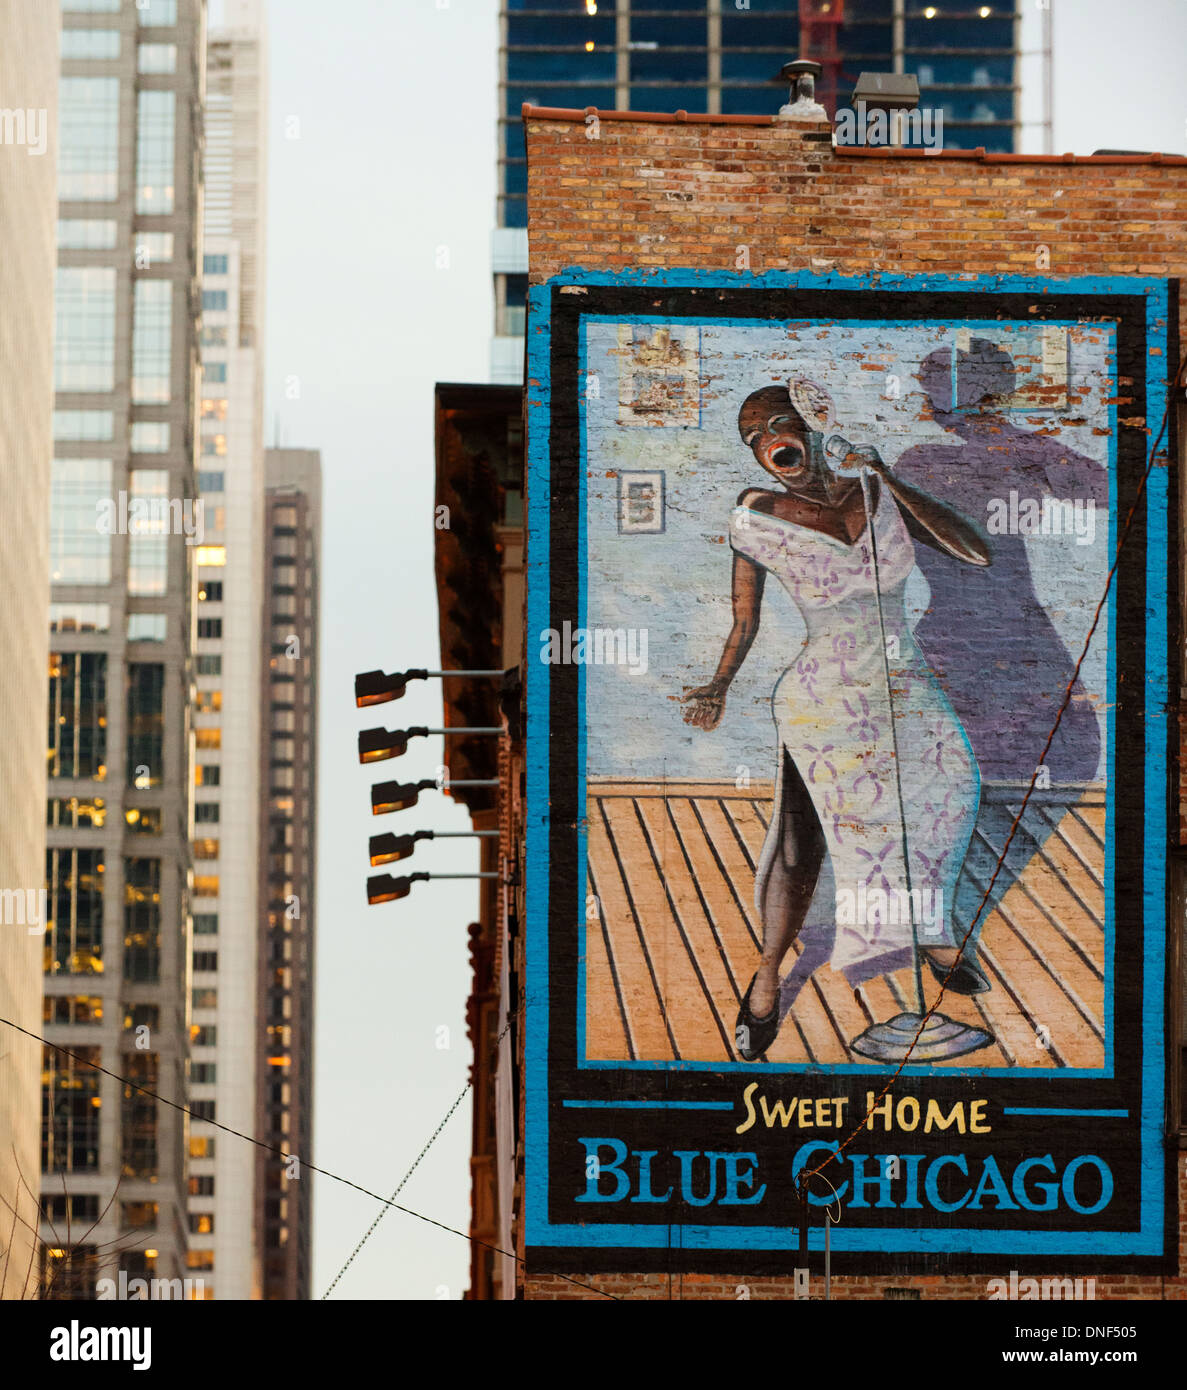 Grande murale sur le côté d'un immeuble la publicité le Chicago blues bleu club. Banque D'Images